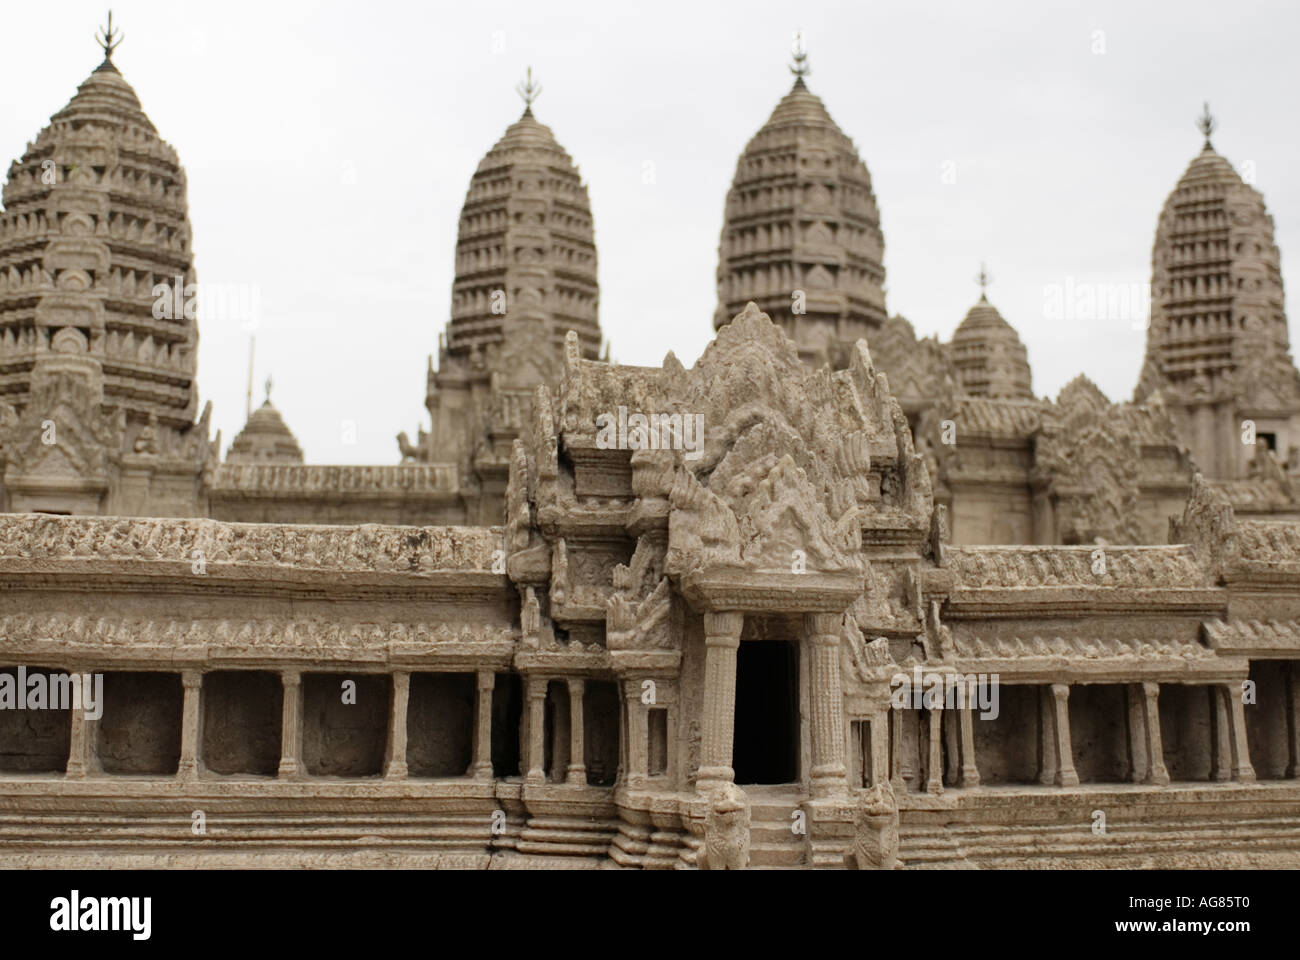 Thailand Bangkok Royal Palace Model Of Angkor Wat Stock Photo